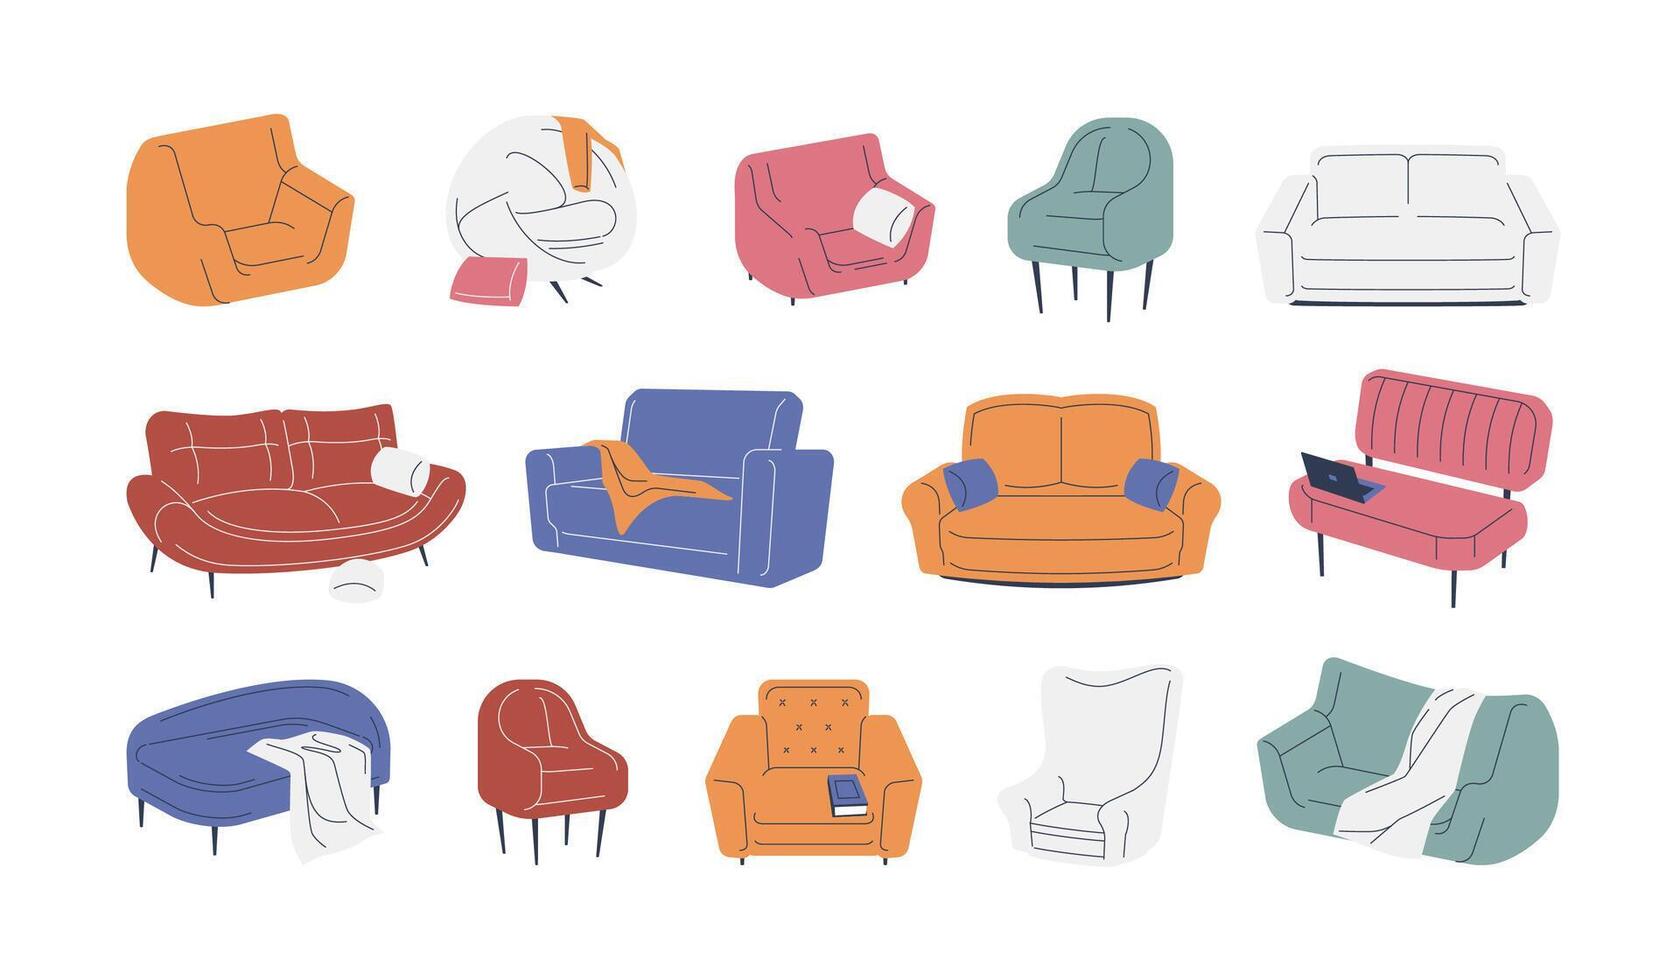 sofás y sillones moderno acogedor suave hogar muebles, vistoso tapizado sofá silla elementos para habitación interior decoración. vector dibujos animados conjunto